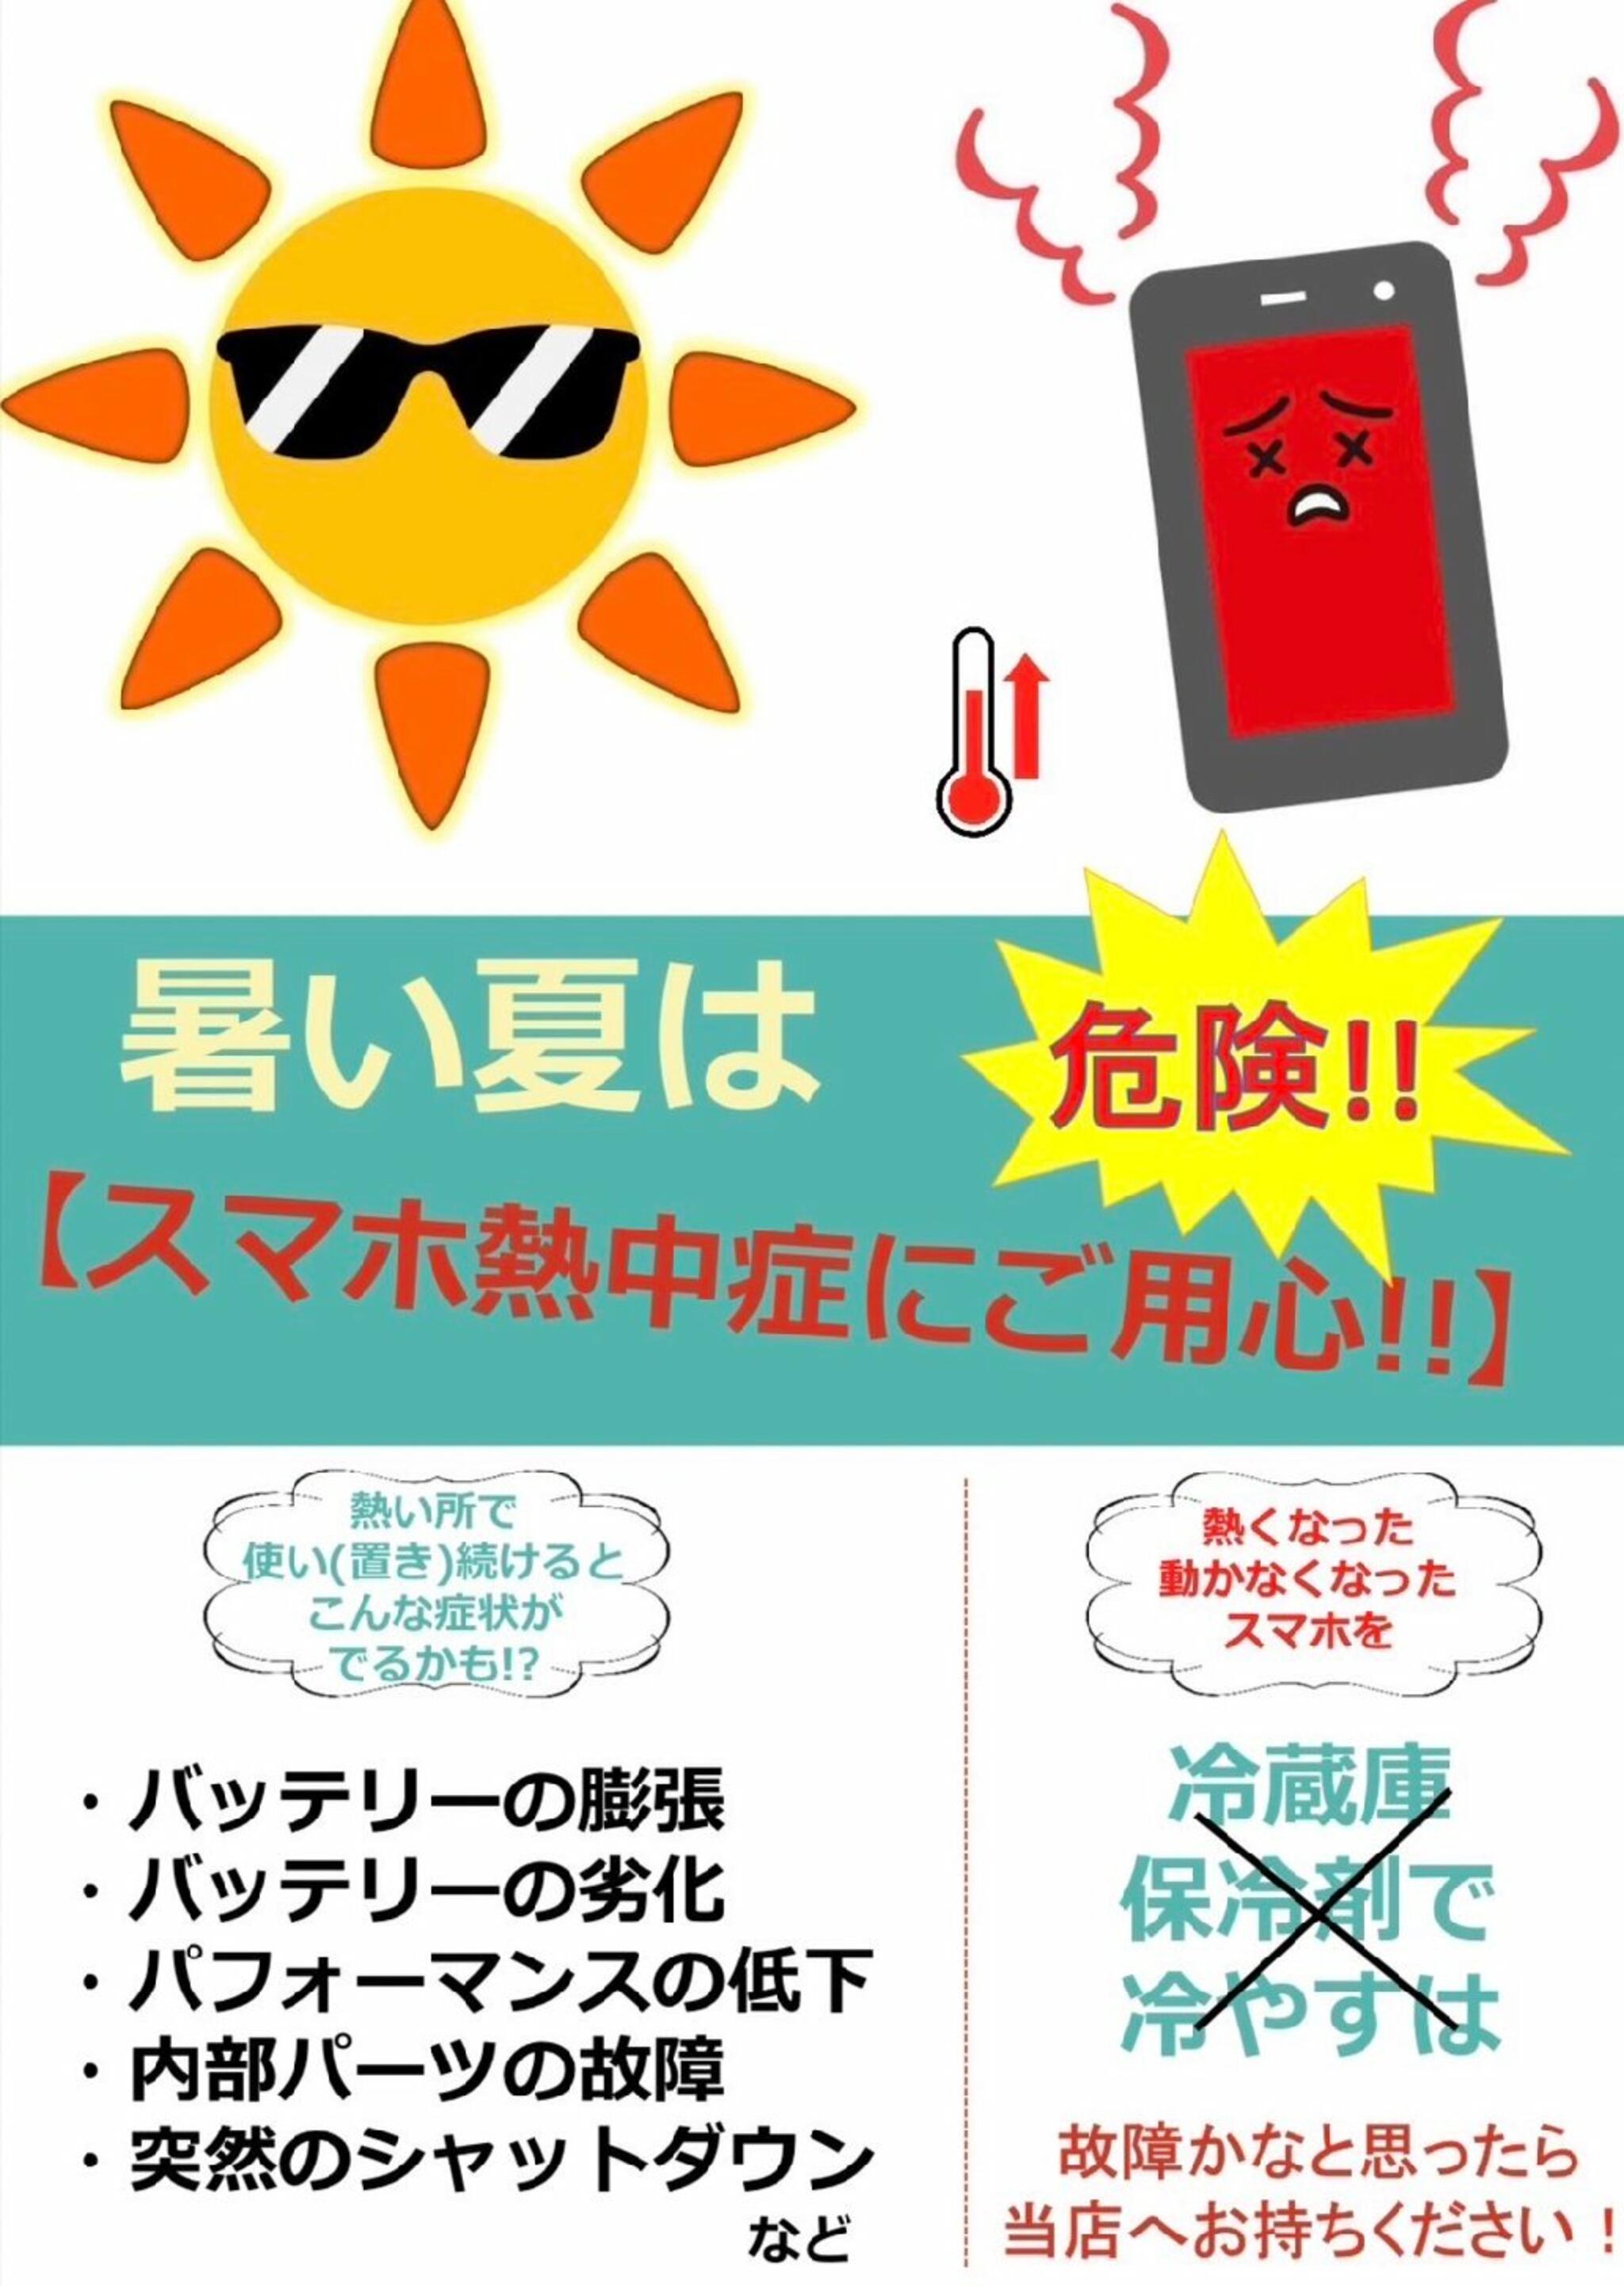 iPhone・iPad・Switch修理店 スマートクール イオンモール広島祇園店からのお知らせ(高温 注意！iPhoneも熱には弱いので気を付けましょう！！)に関する写真